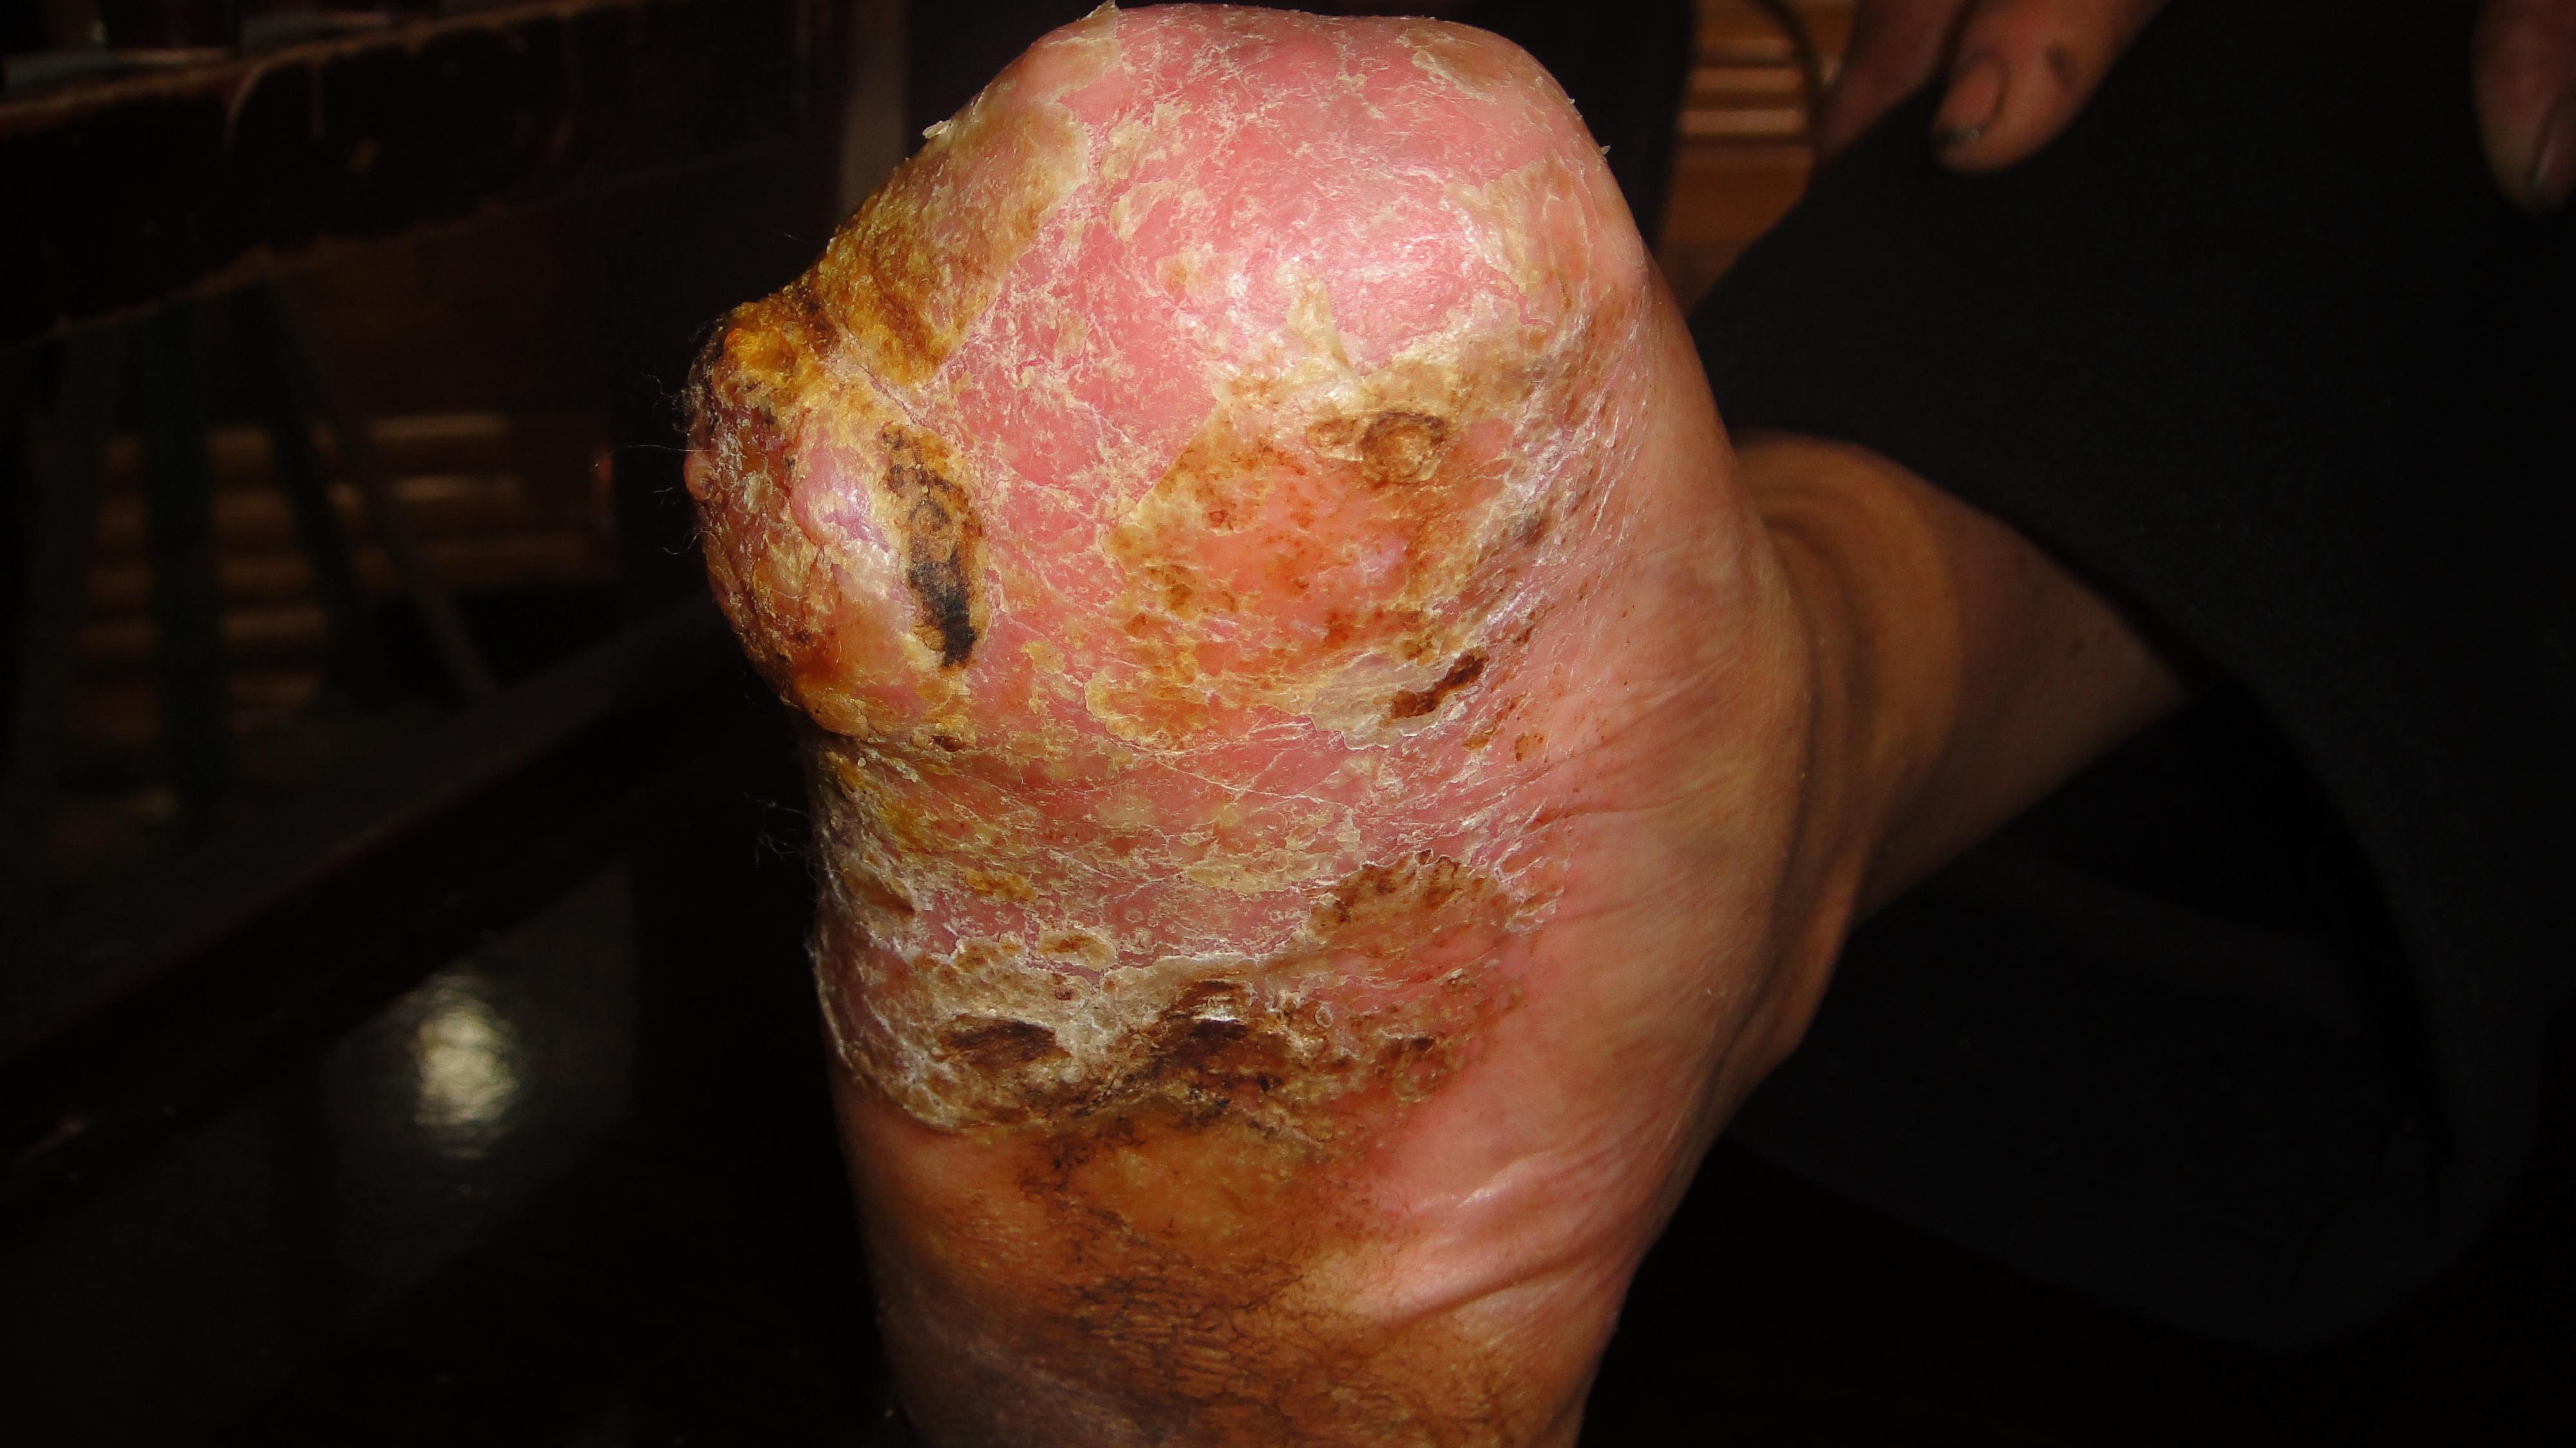 被真菌感染的皮肤图图片